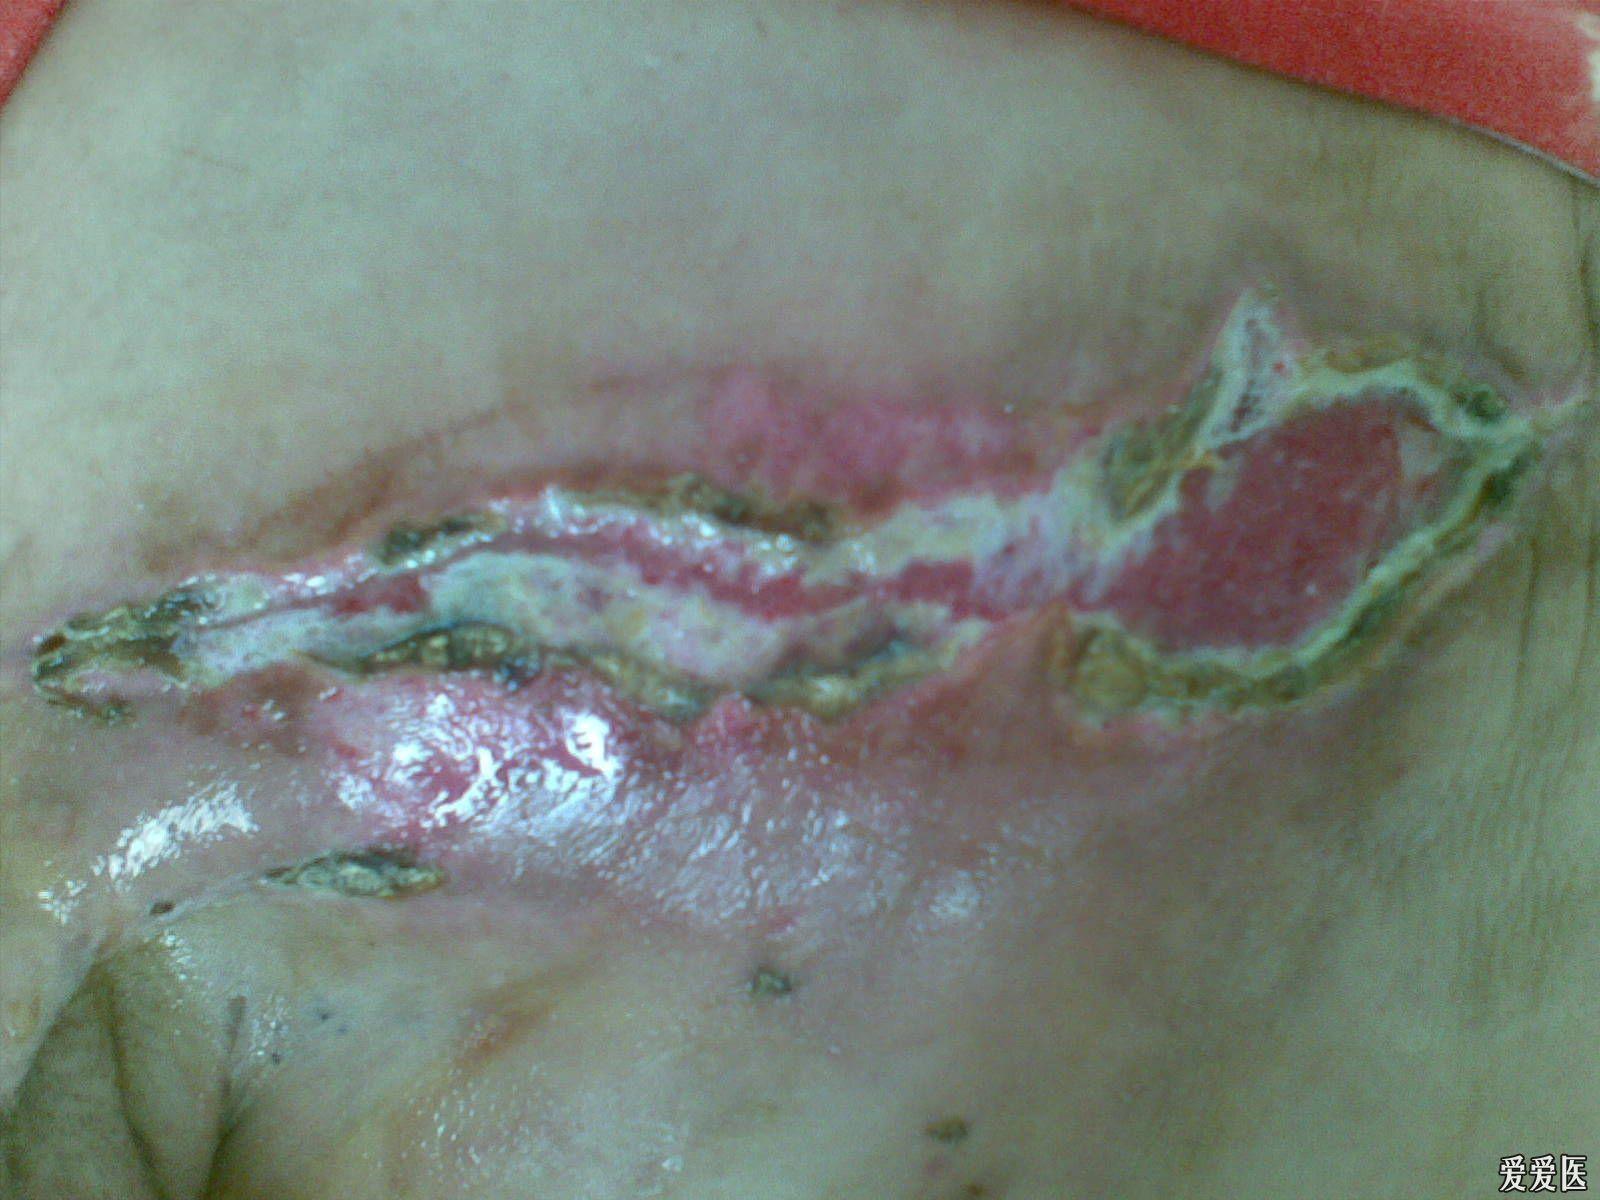 乳腺癌切除后疤痕图片